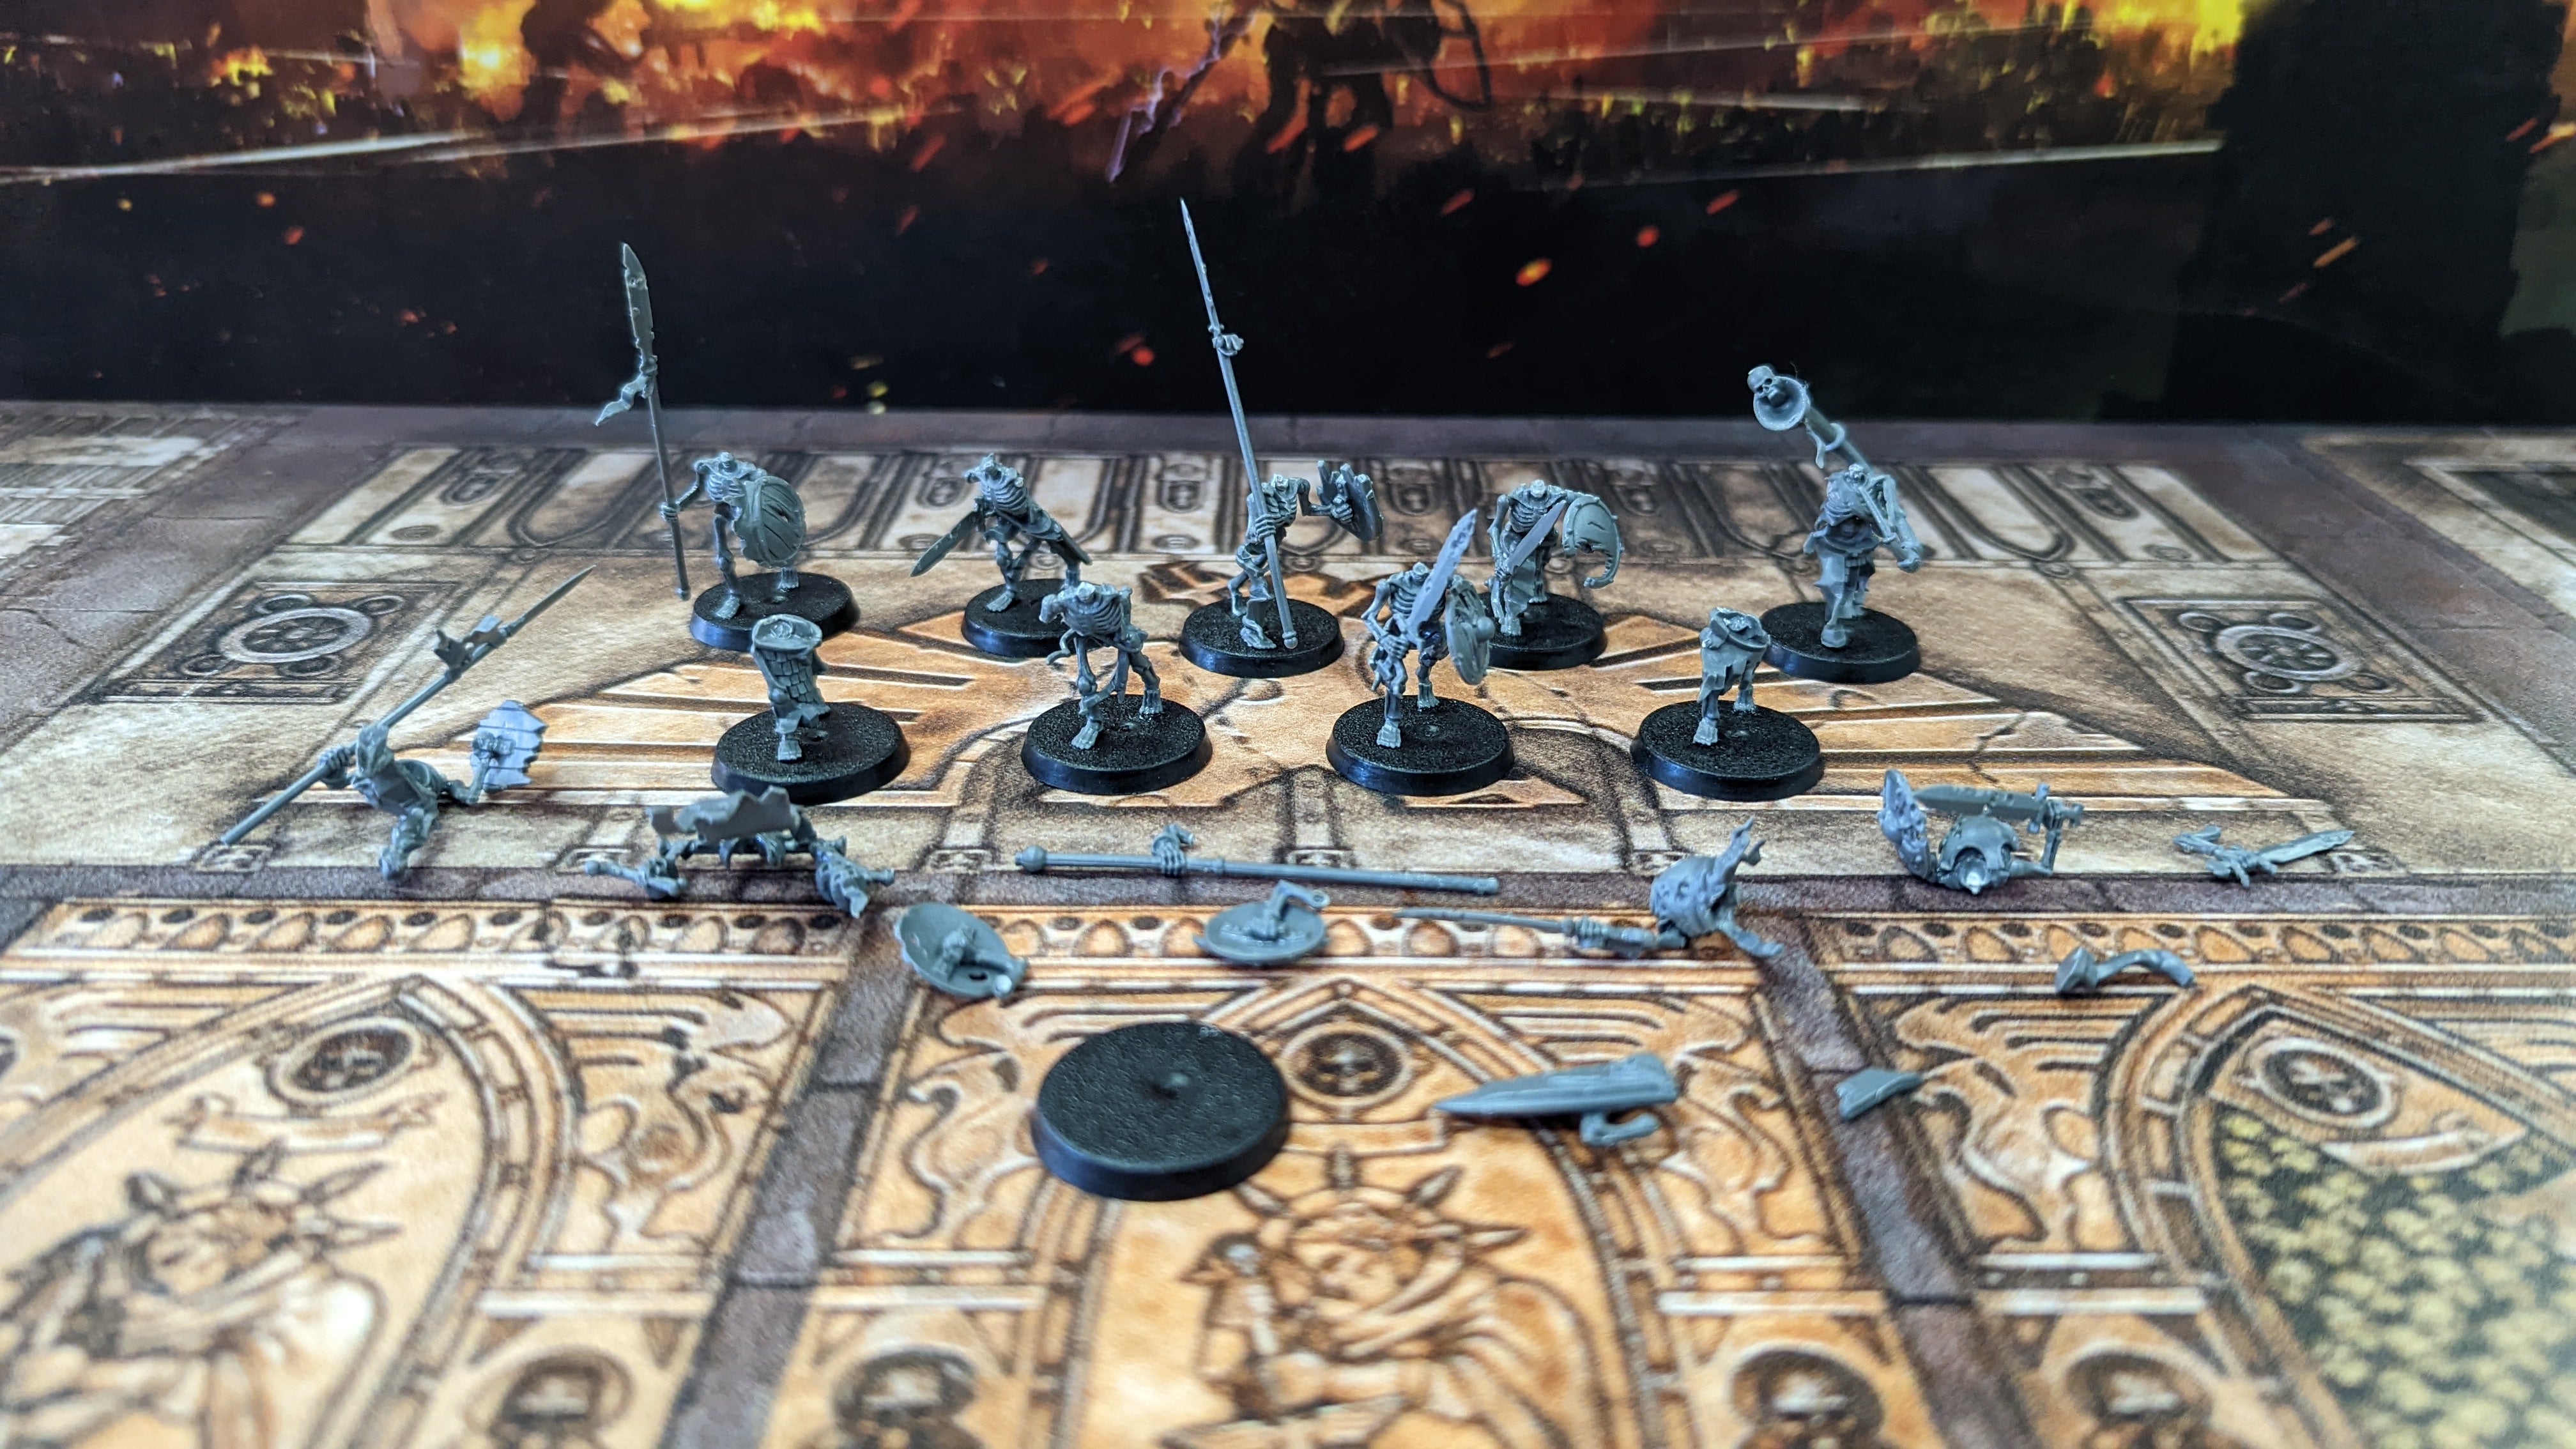 As Traded - OOP Warhammer fantasy Skeleton Warriors | Lots Moore NSW